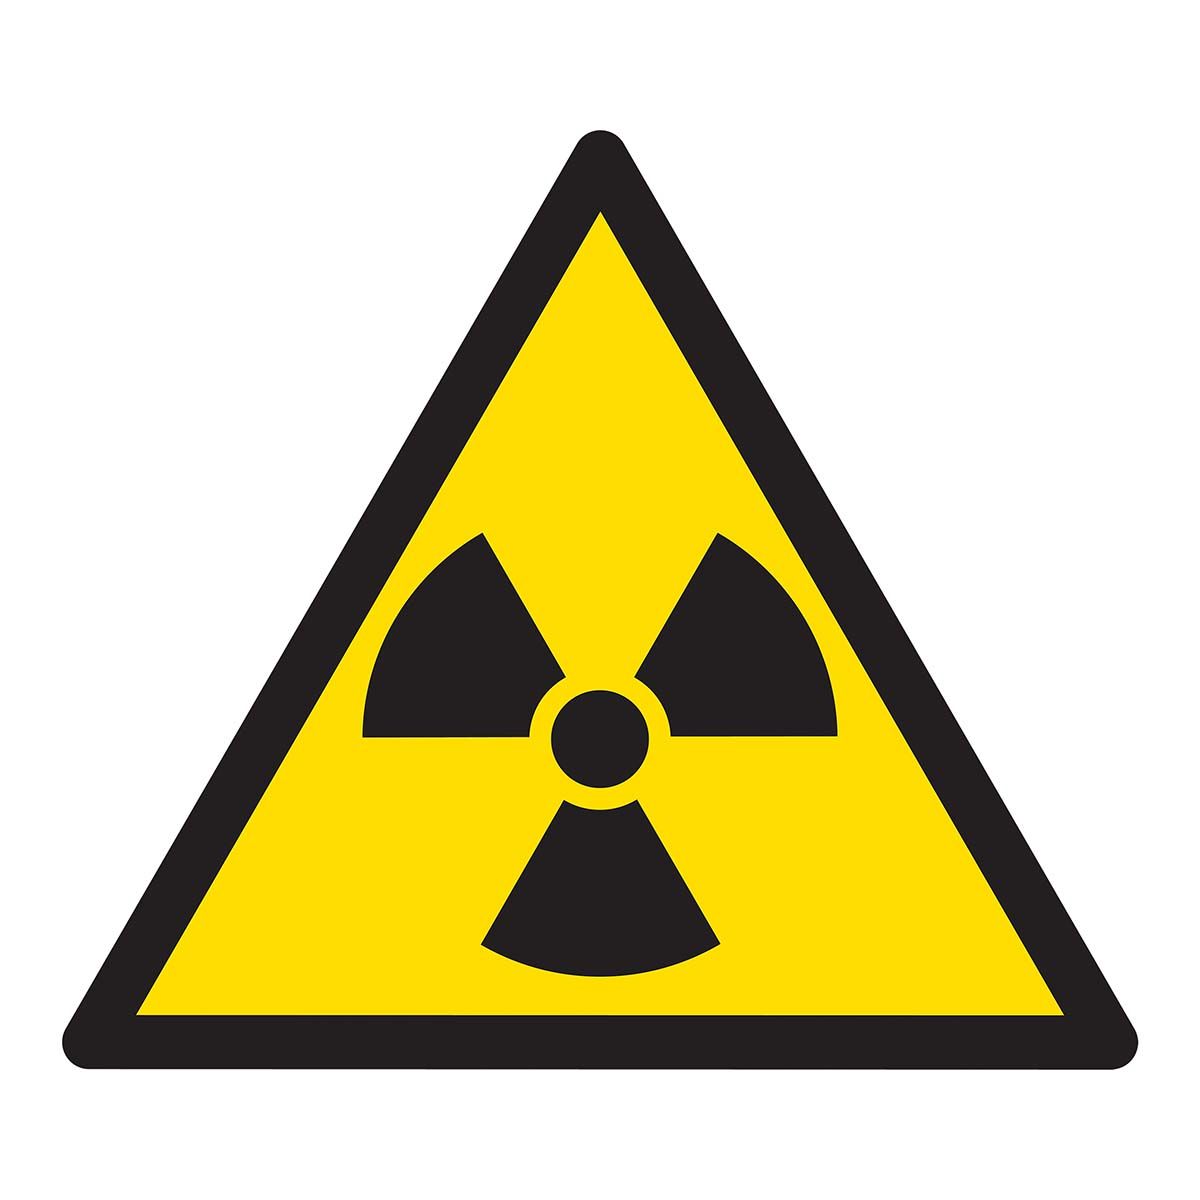 Inamicul radon: un pericol pentru sănătatea publică, cel mai adesea ignorat